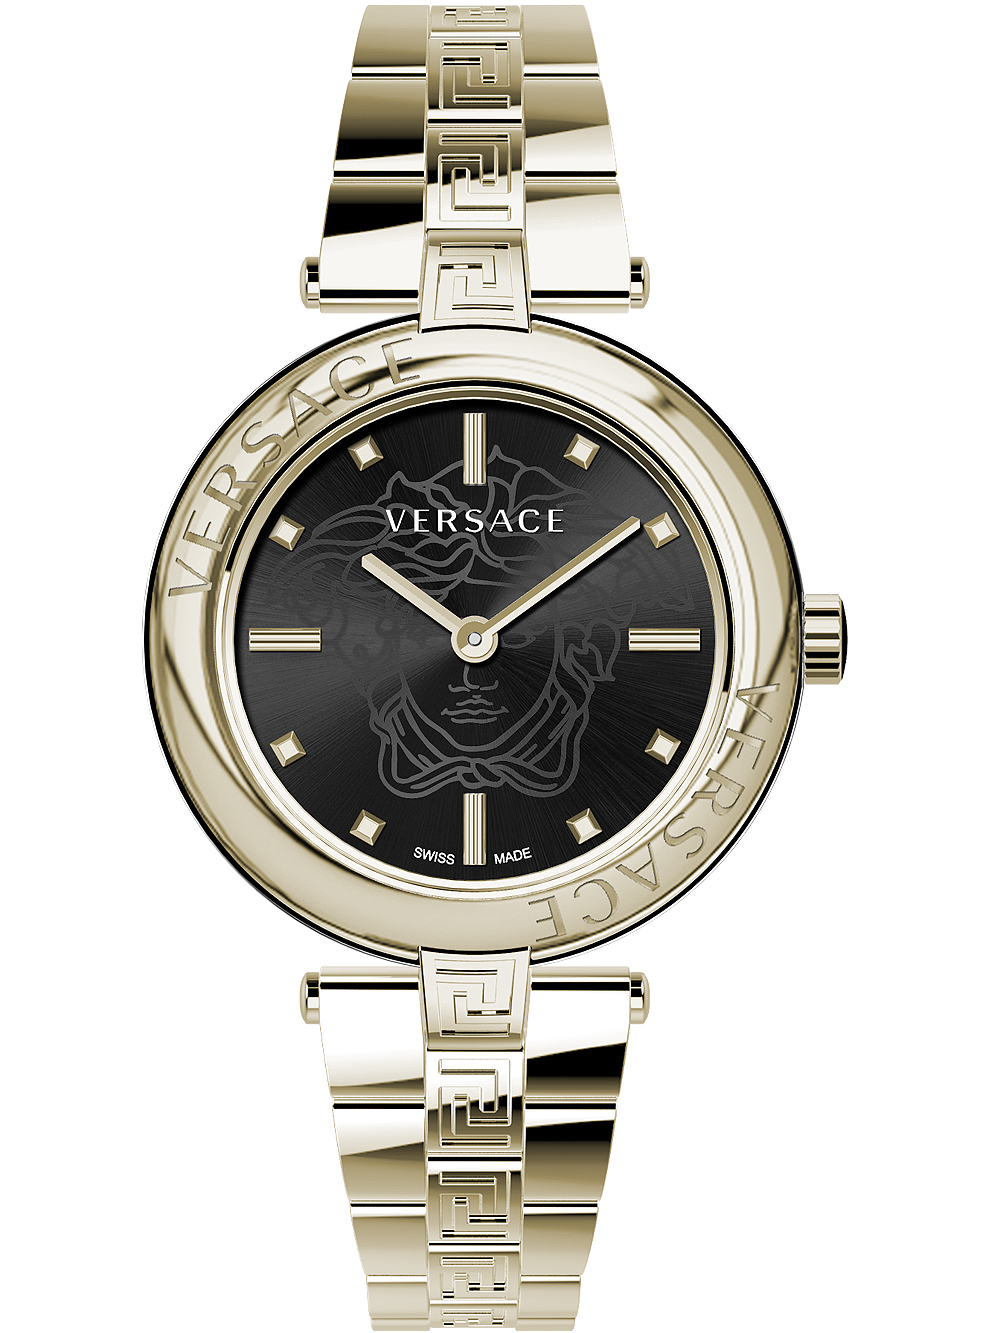 Zegarek damski Versace VE2J00721 New Lady złoty